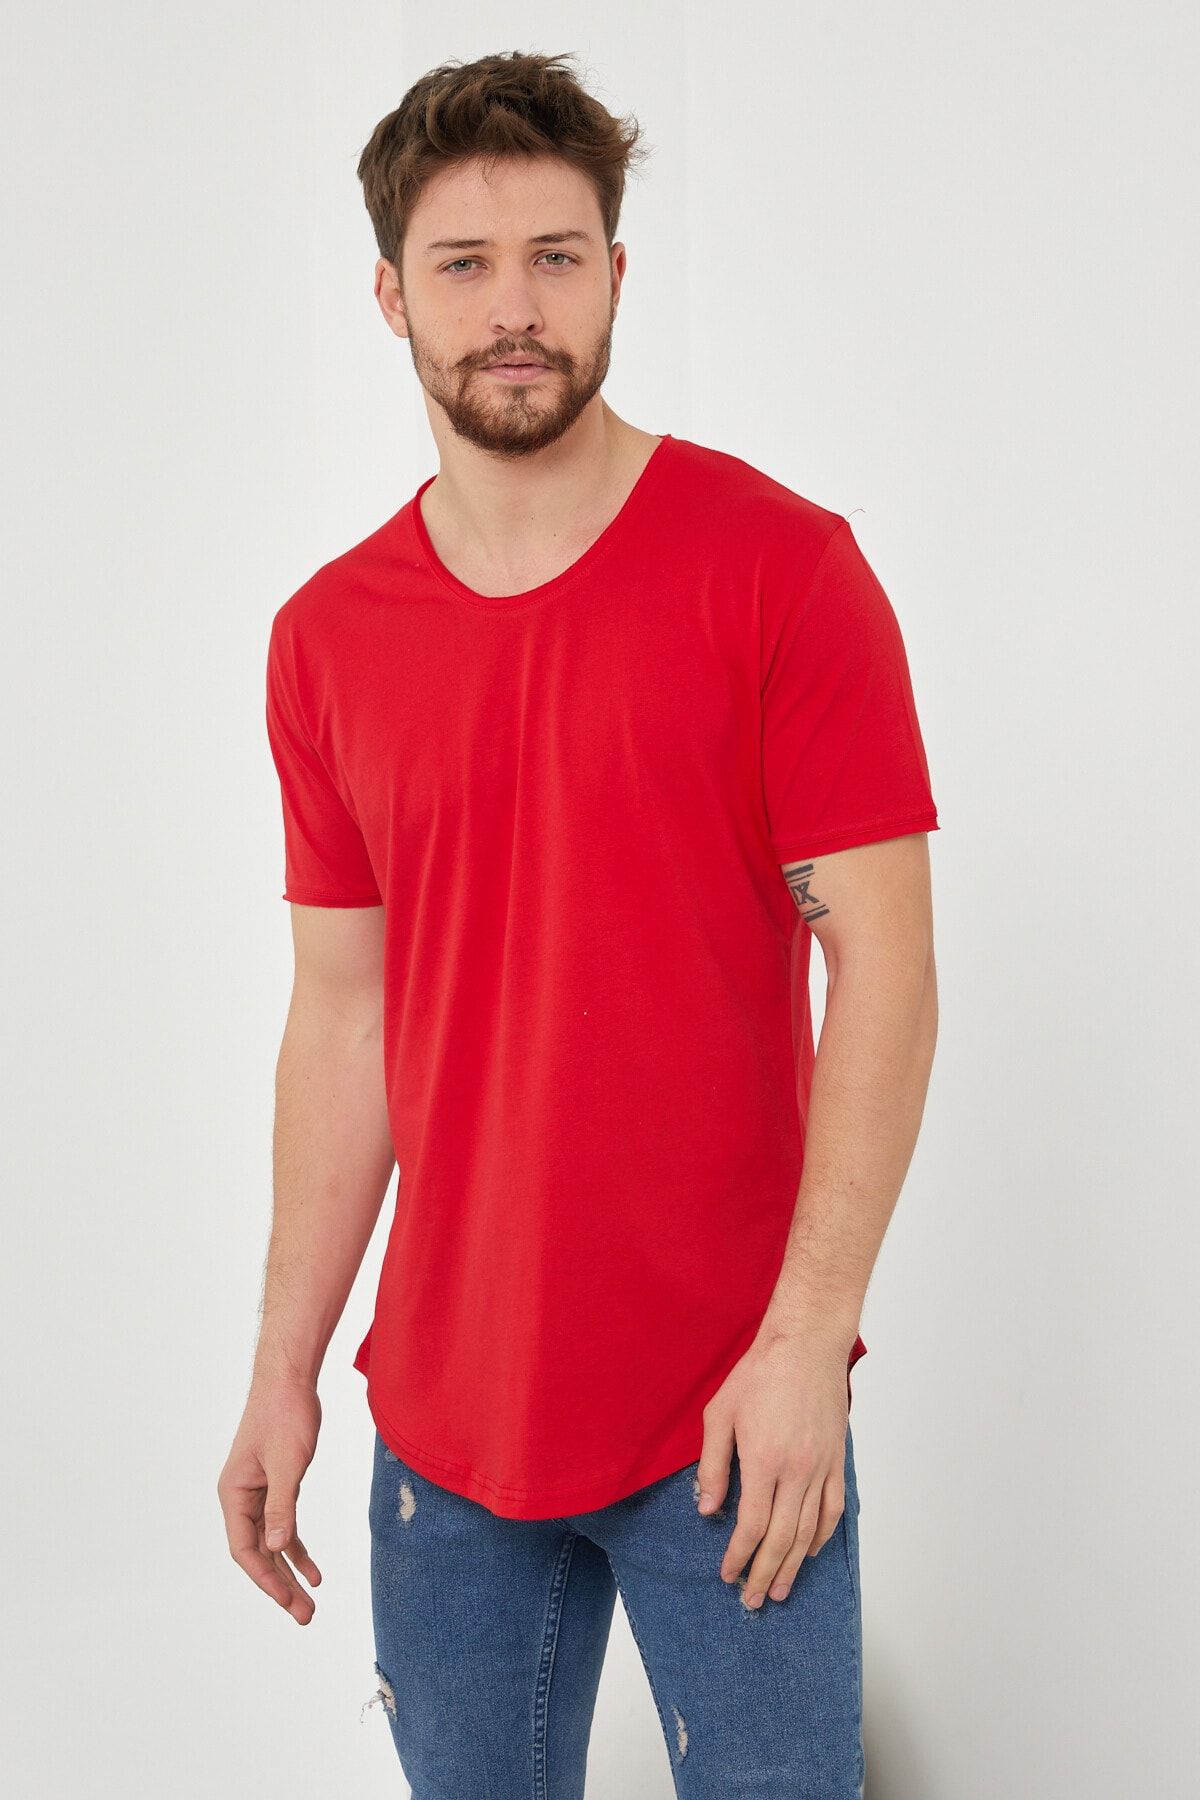 Tarz Cool Erkek Kırmızı Pis Yaka Salaş T-shirt-tcps001r57s